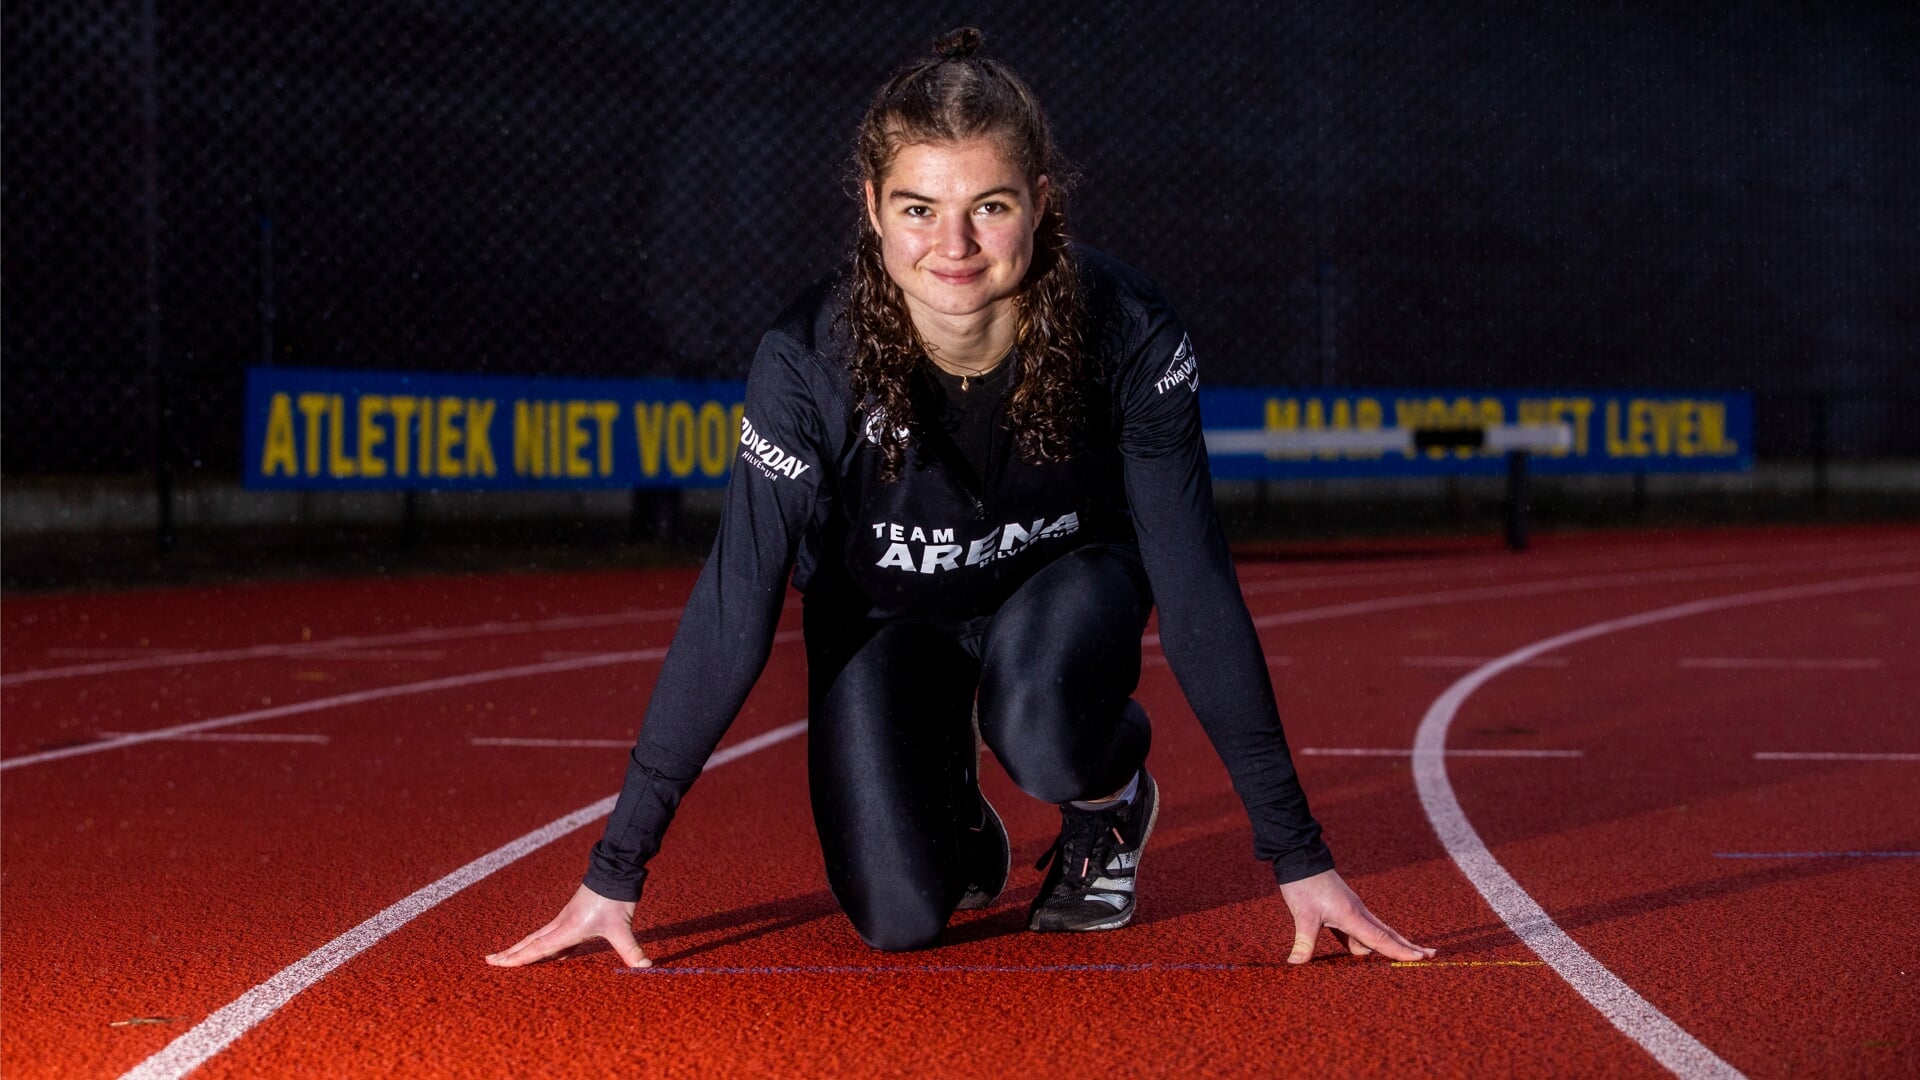 Myrte van der Schoot won brons, maar miste net de finale van de 400 meter. 